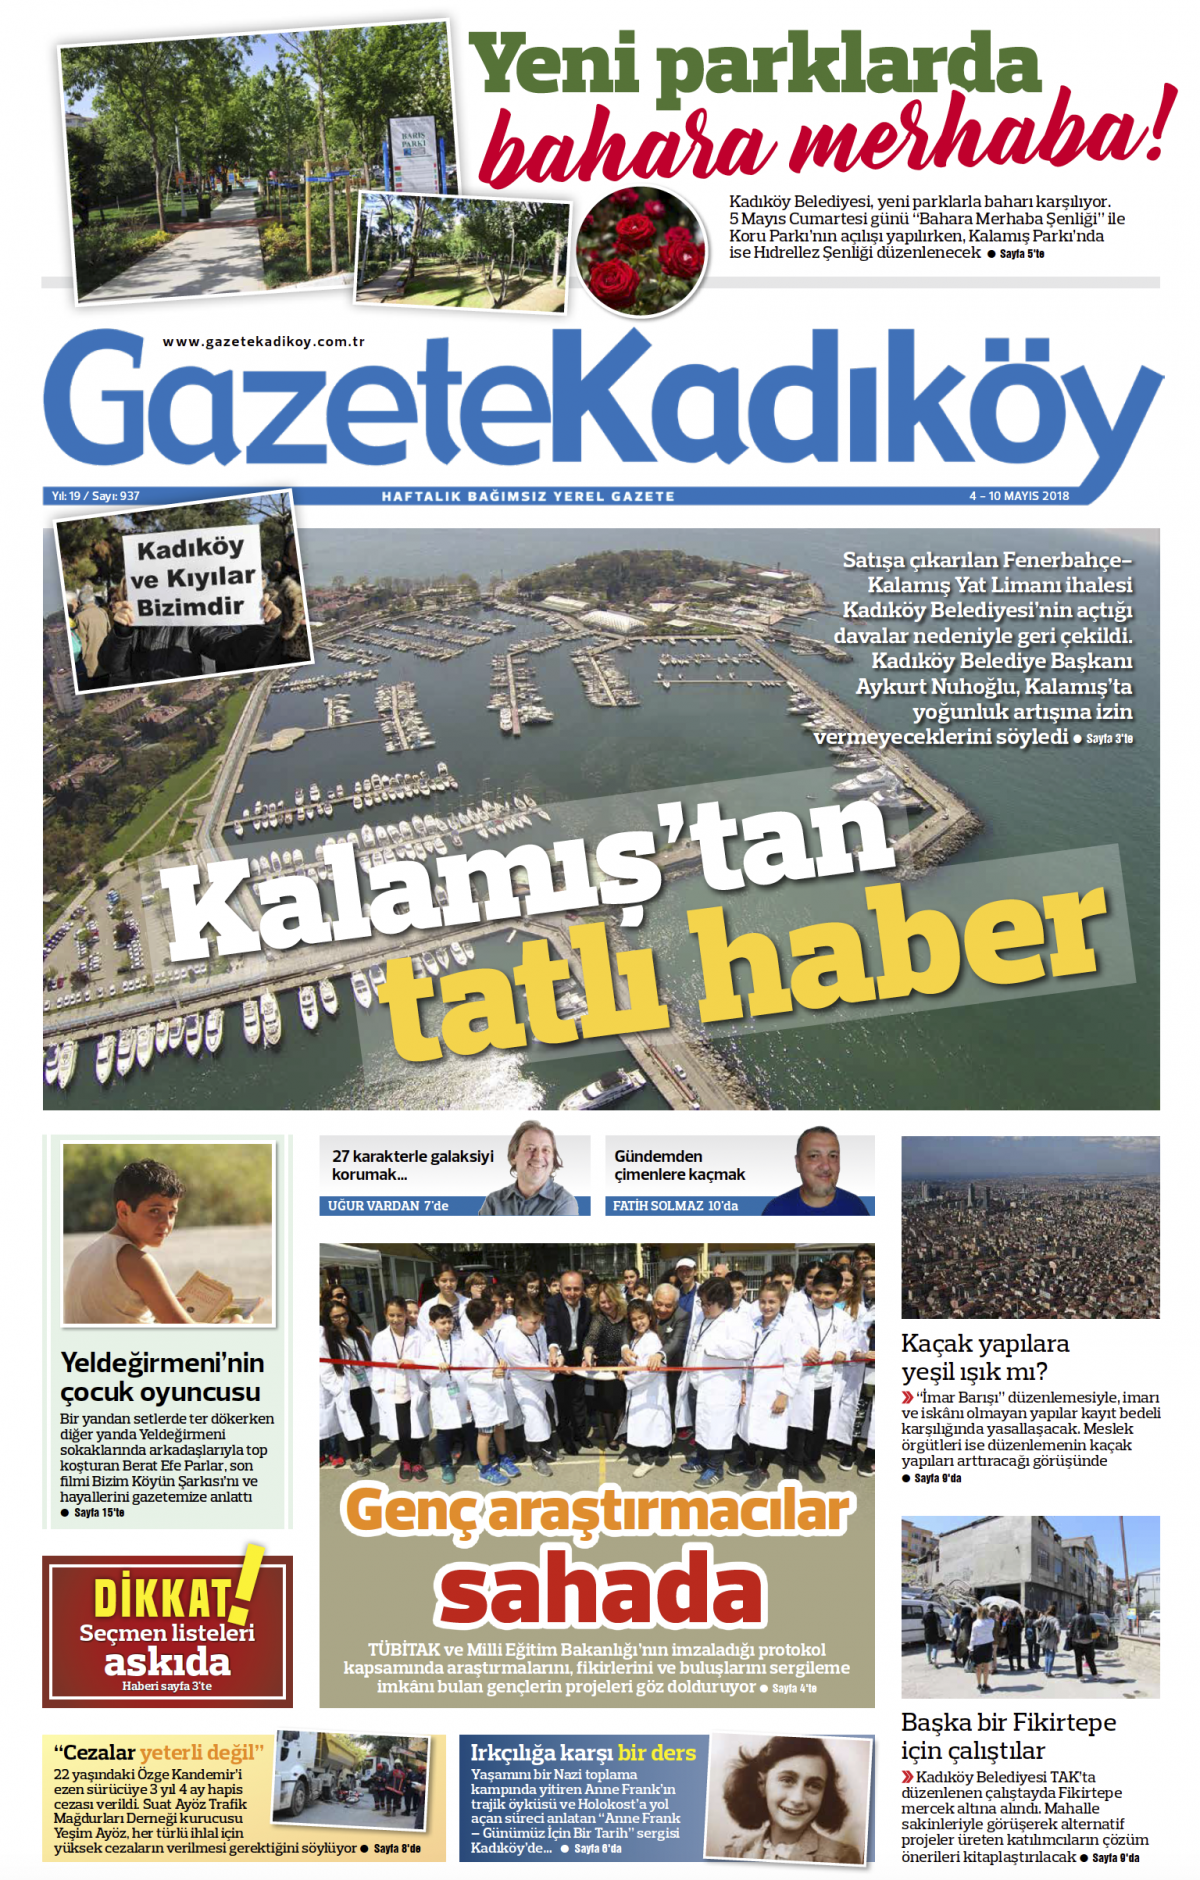 Gazete Kadıköy - 937. SAYI